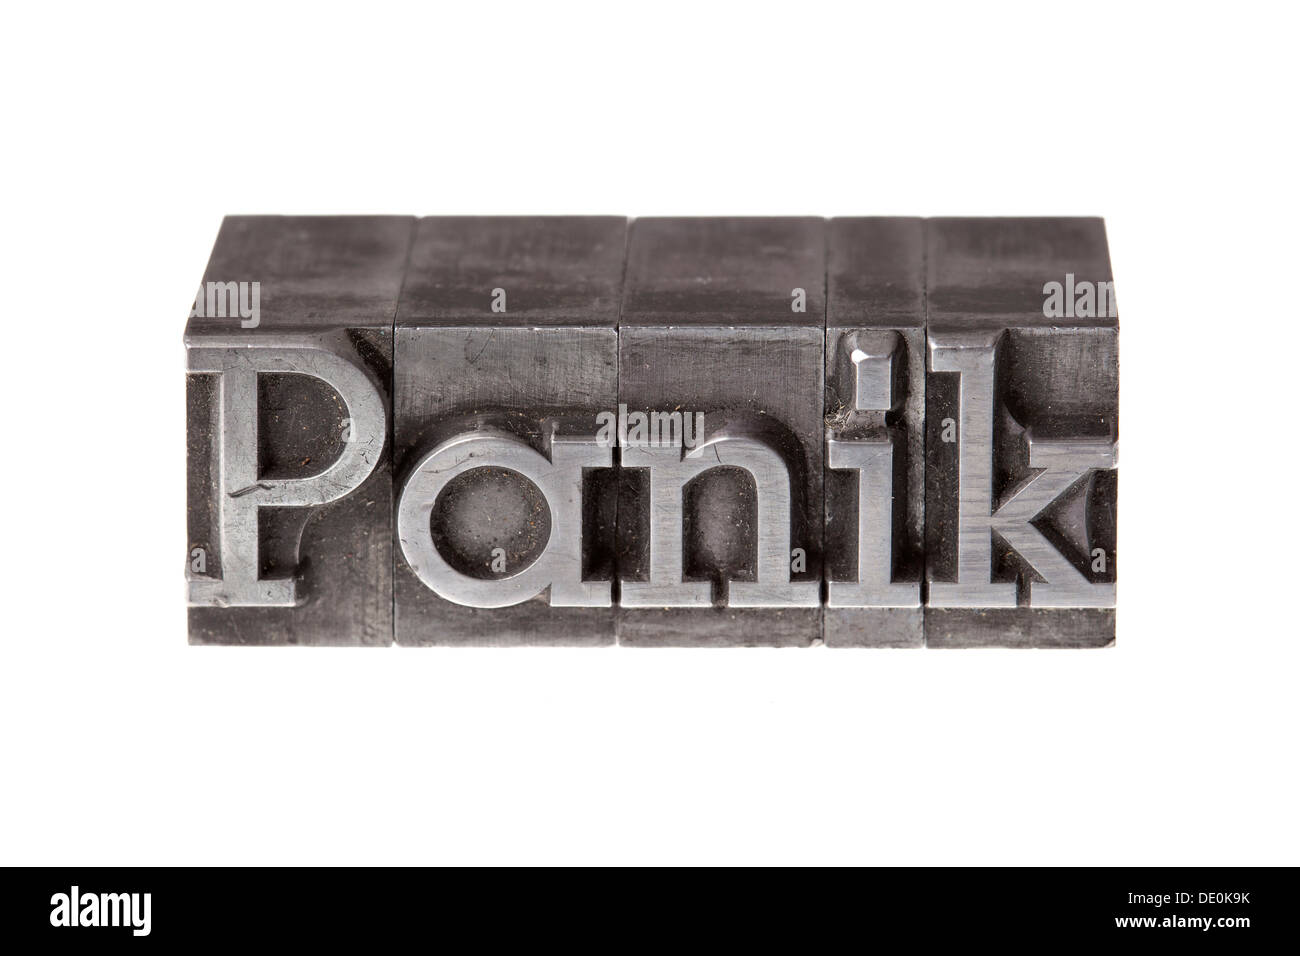 Vecchio portano lettere che compongono la parola "Panik', Tedesco per panico Foto Stock